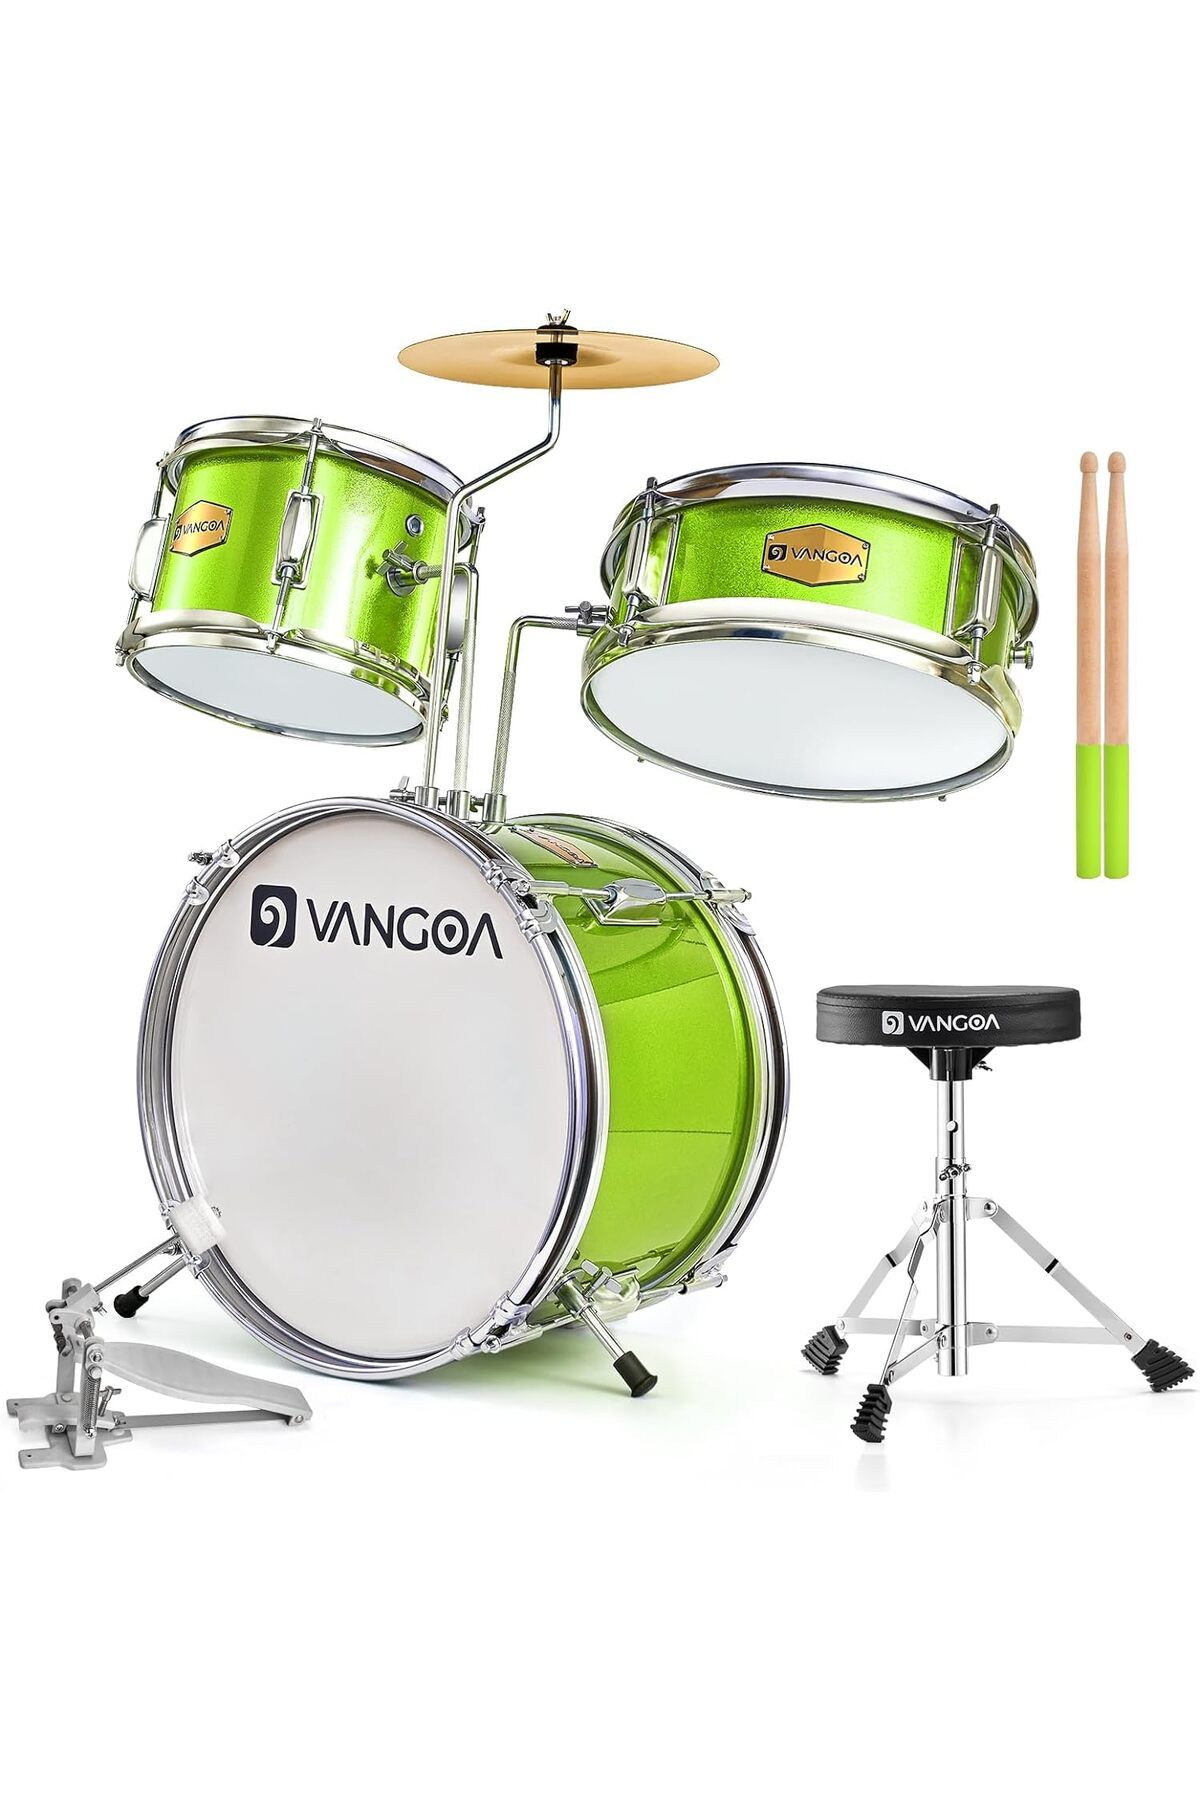 VANGOA Akustik davul seti, yeni başlayanlar için,13 inç davul seti, 3 parçalı Junior Drum davul seti